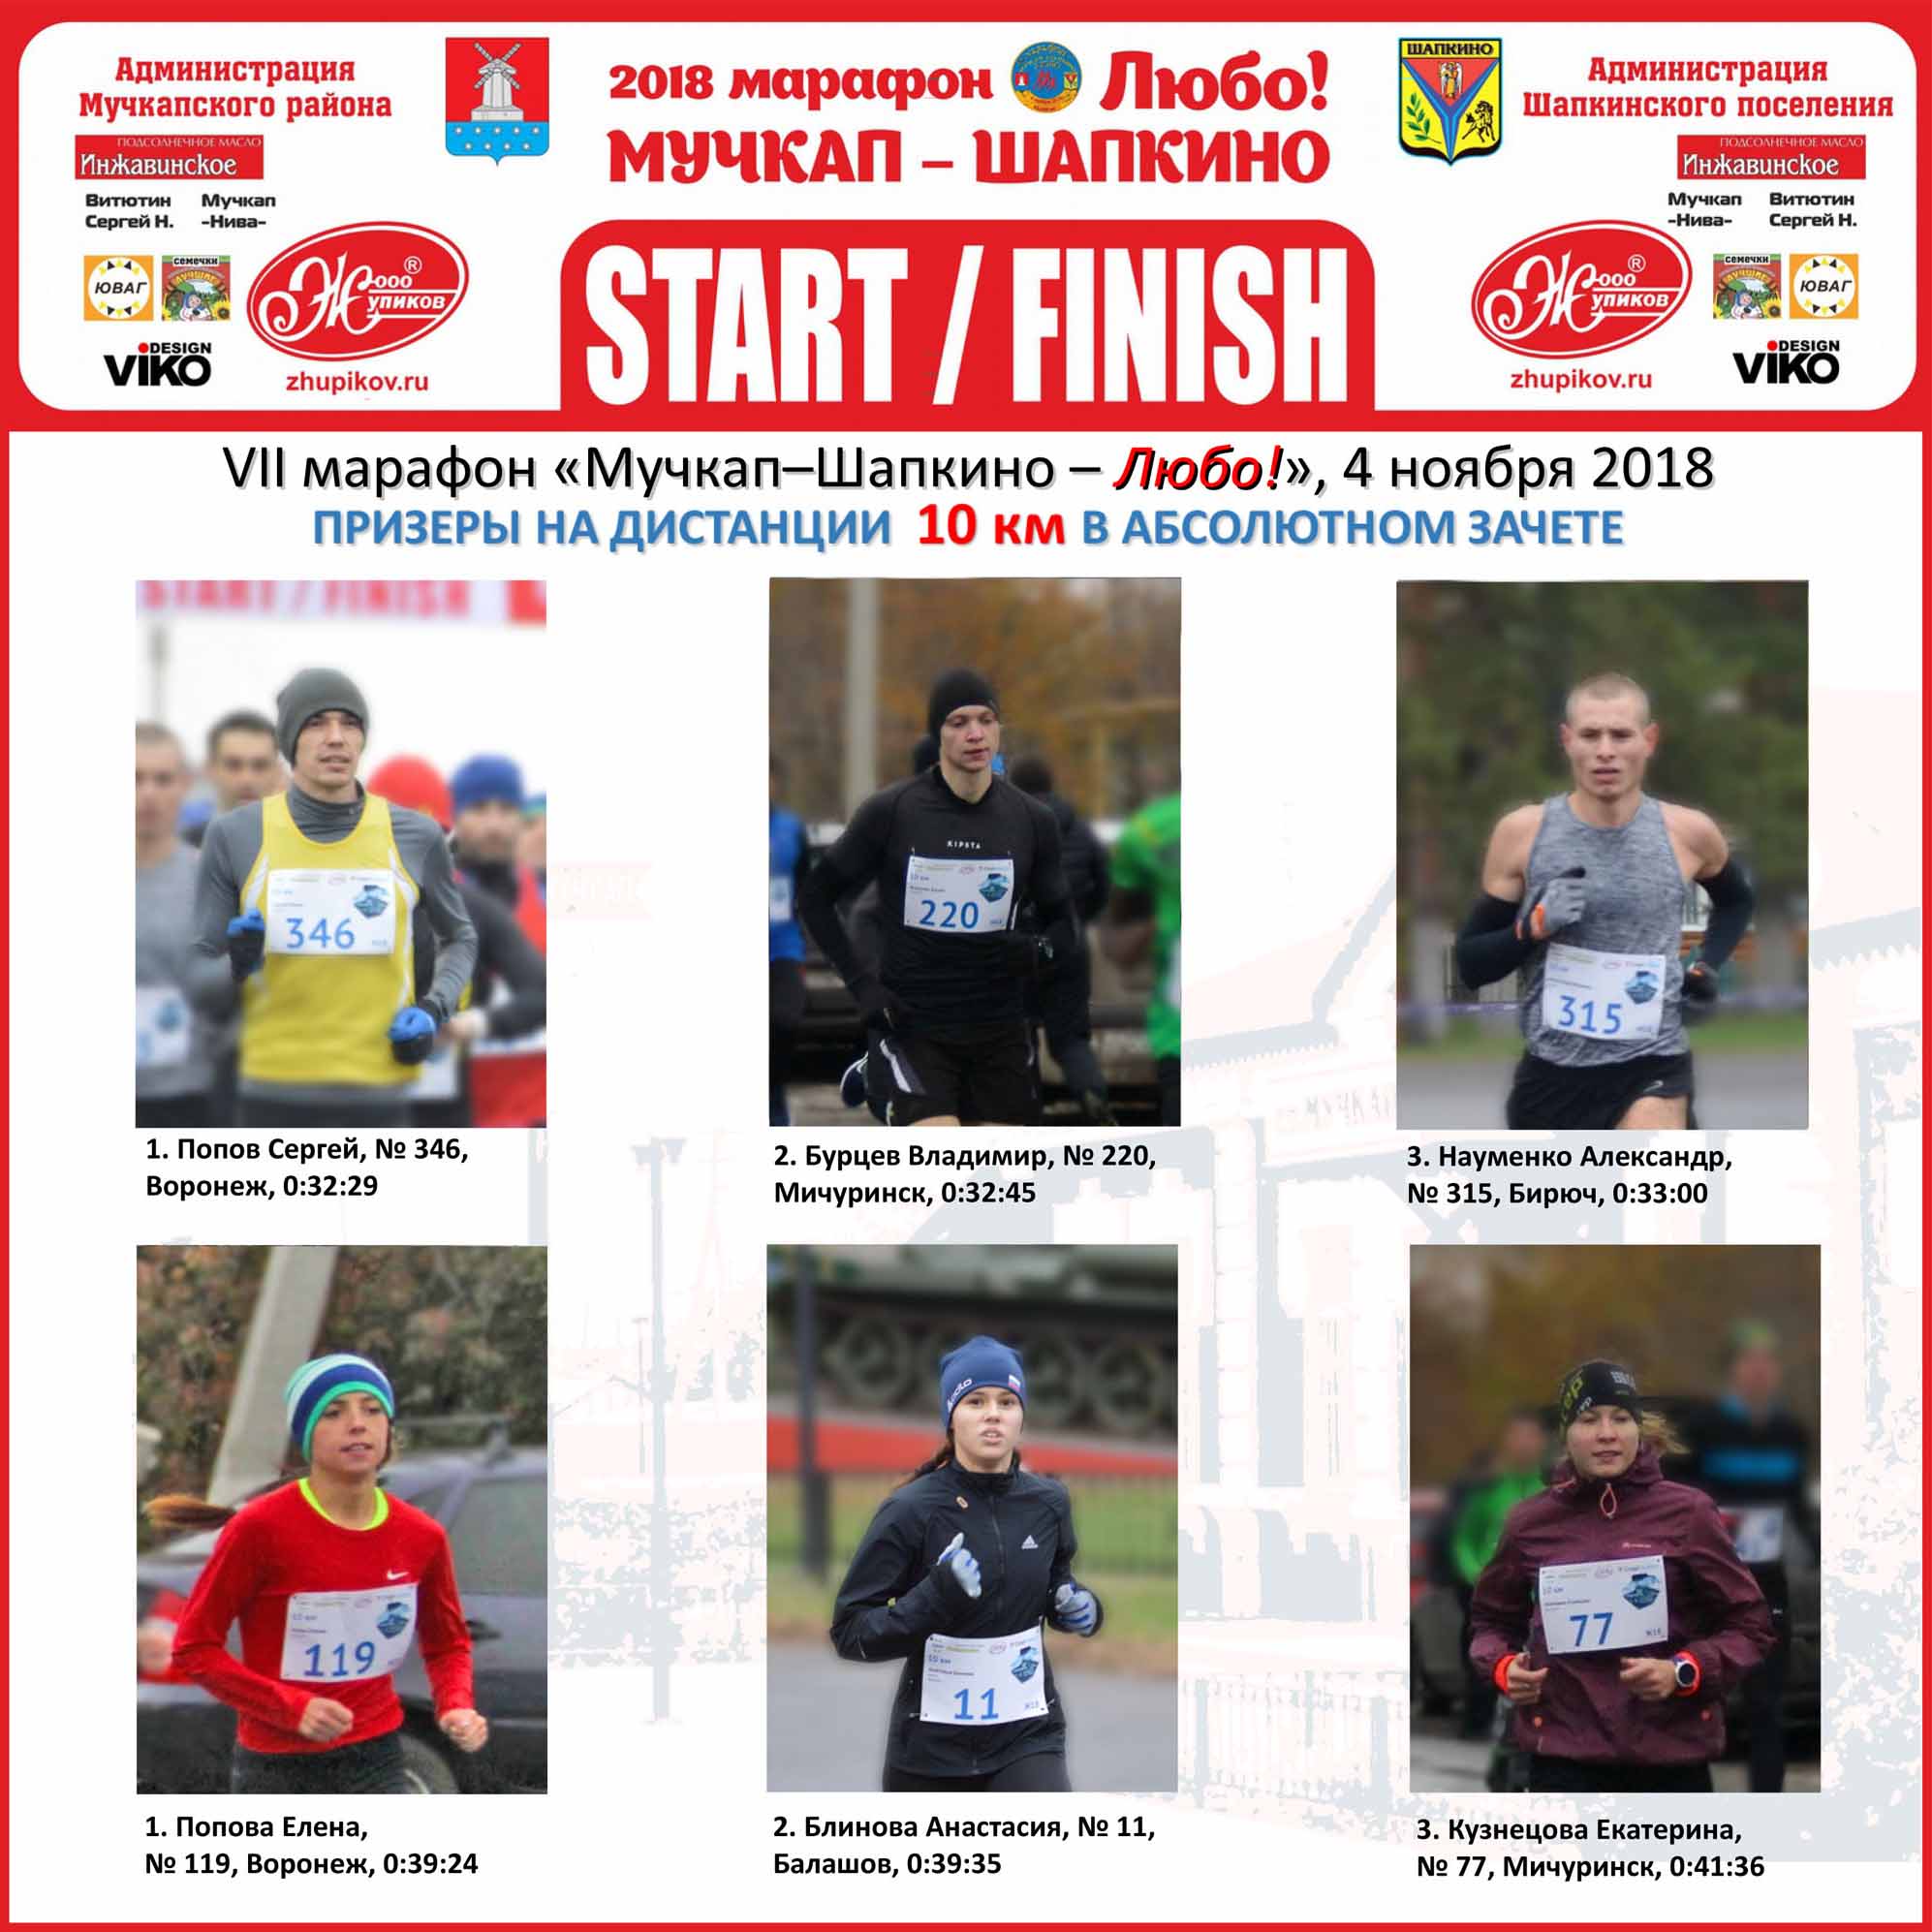 2018 marathon prizery 10 km